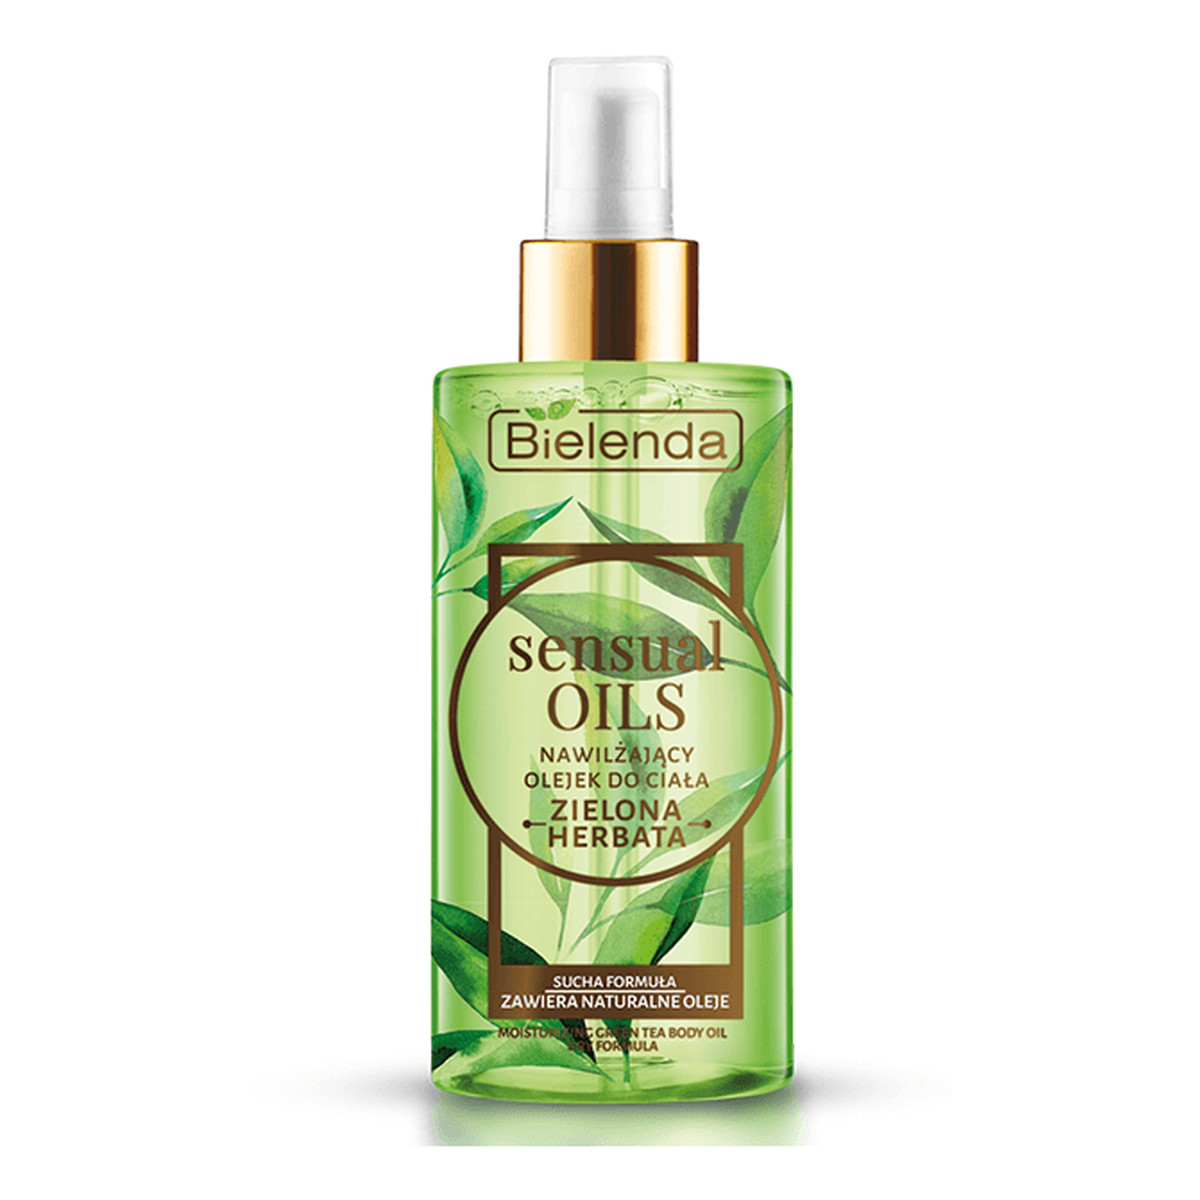 Bielenda Sensual Oils Nawilżający olejek do ciała Zielona Herbata 150ml